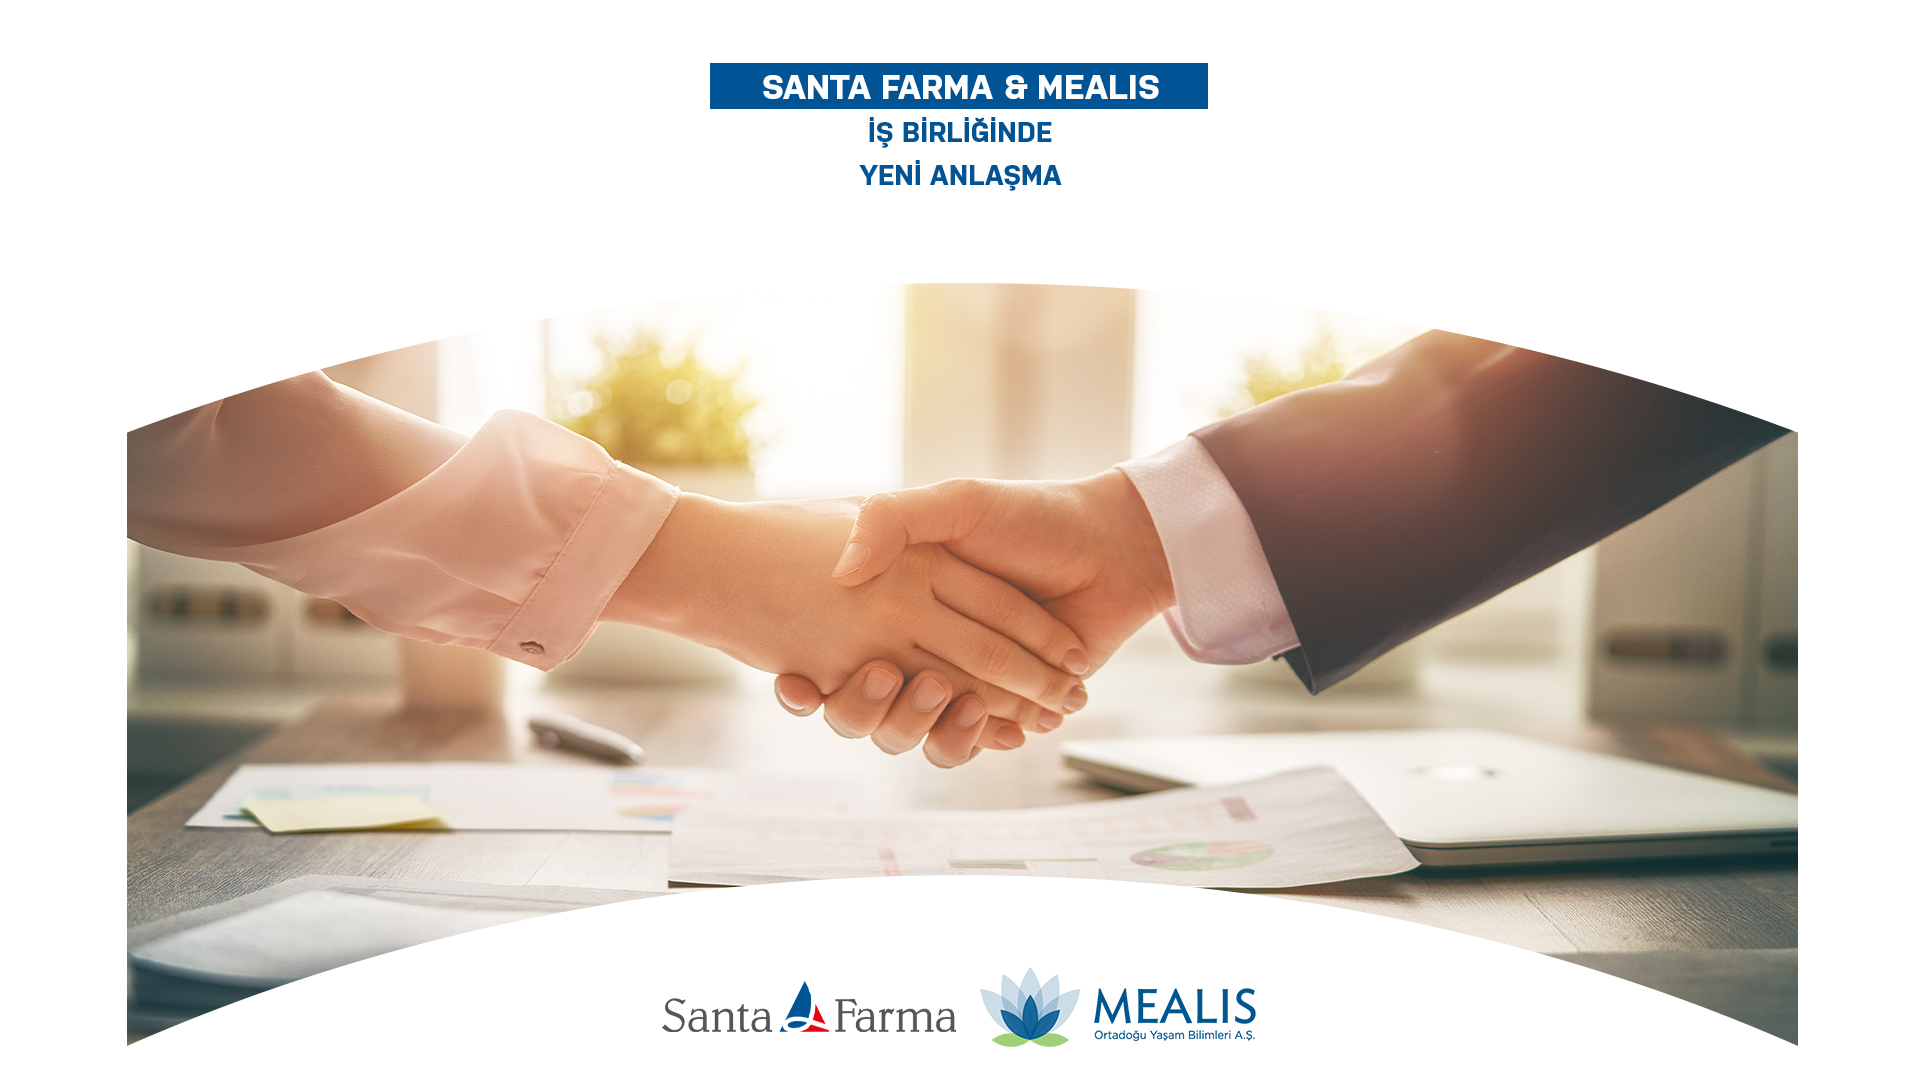 Santa Farma Mealis İş Birliğinde Yeni Anlaşma -Mealis